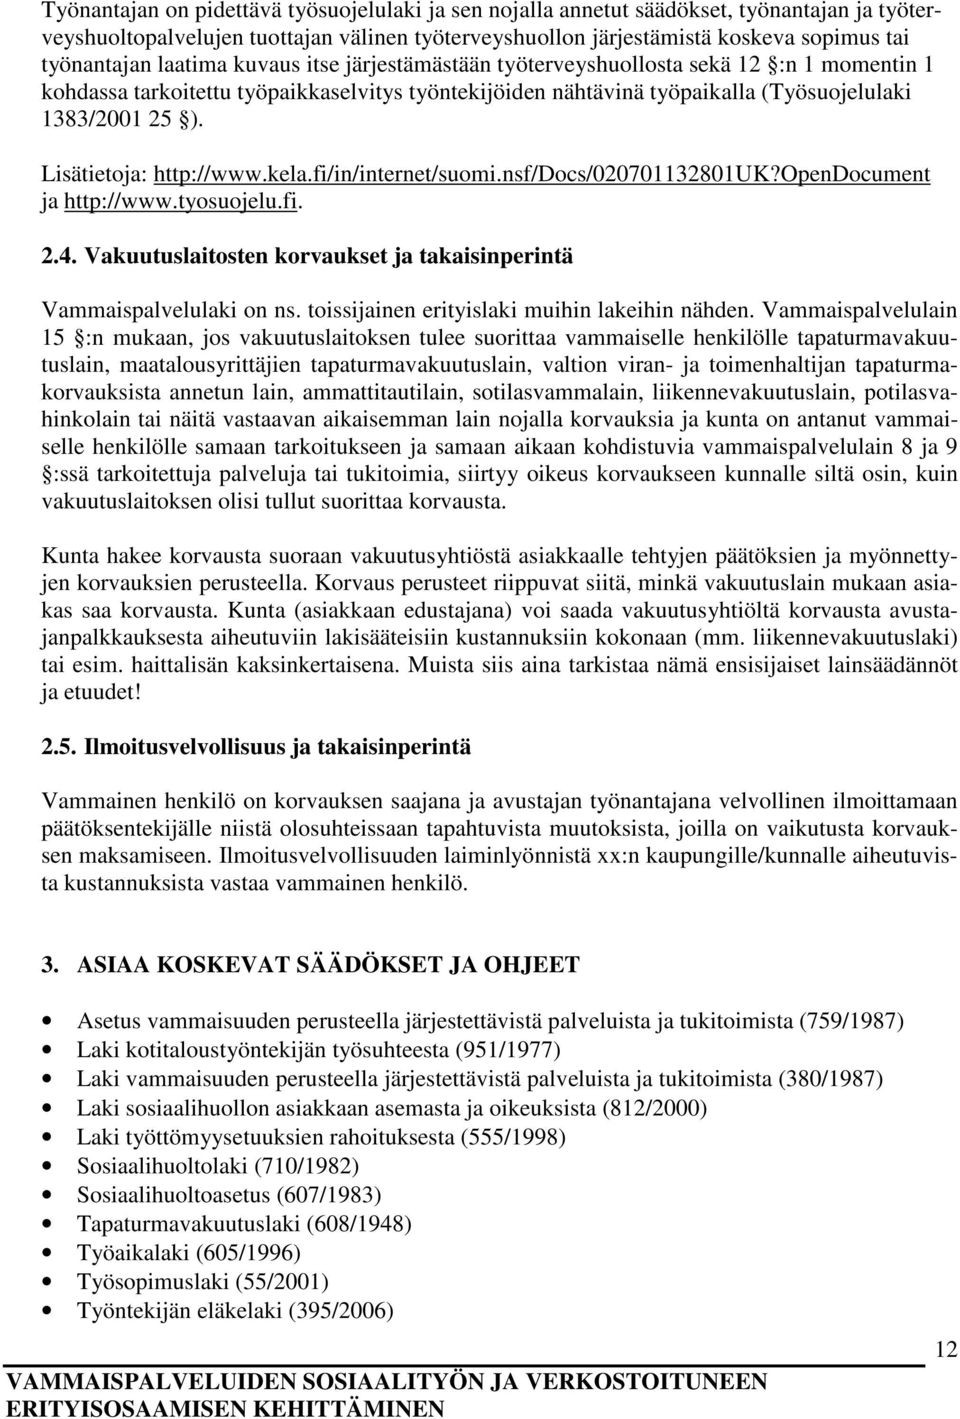 Lisätietoja: http://www.kela.fi/in/internet/suomi.nsf/docs/020701132801uk?opendocument ja http://www.tyosuojelu.fi. 2.4. Vakuutuslaitosten korvaukset ja takaisinperintä Vammaispalvelulaki on ns.